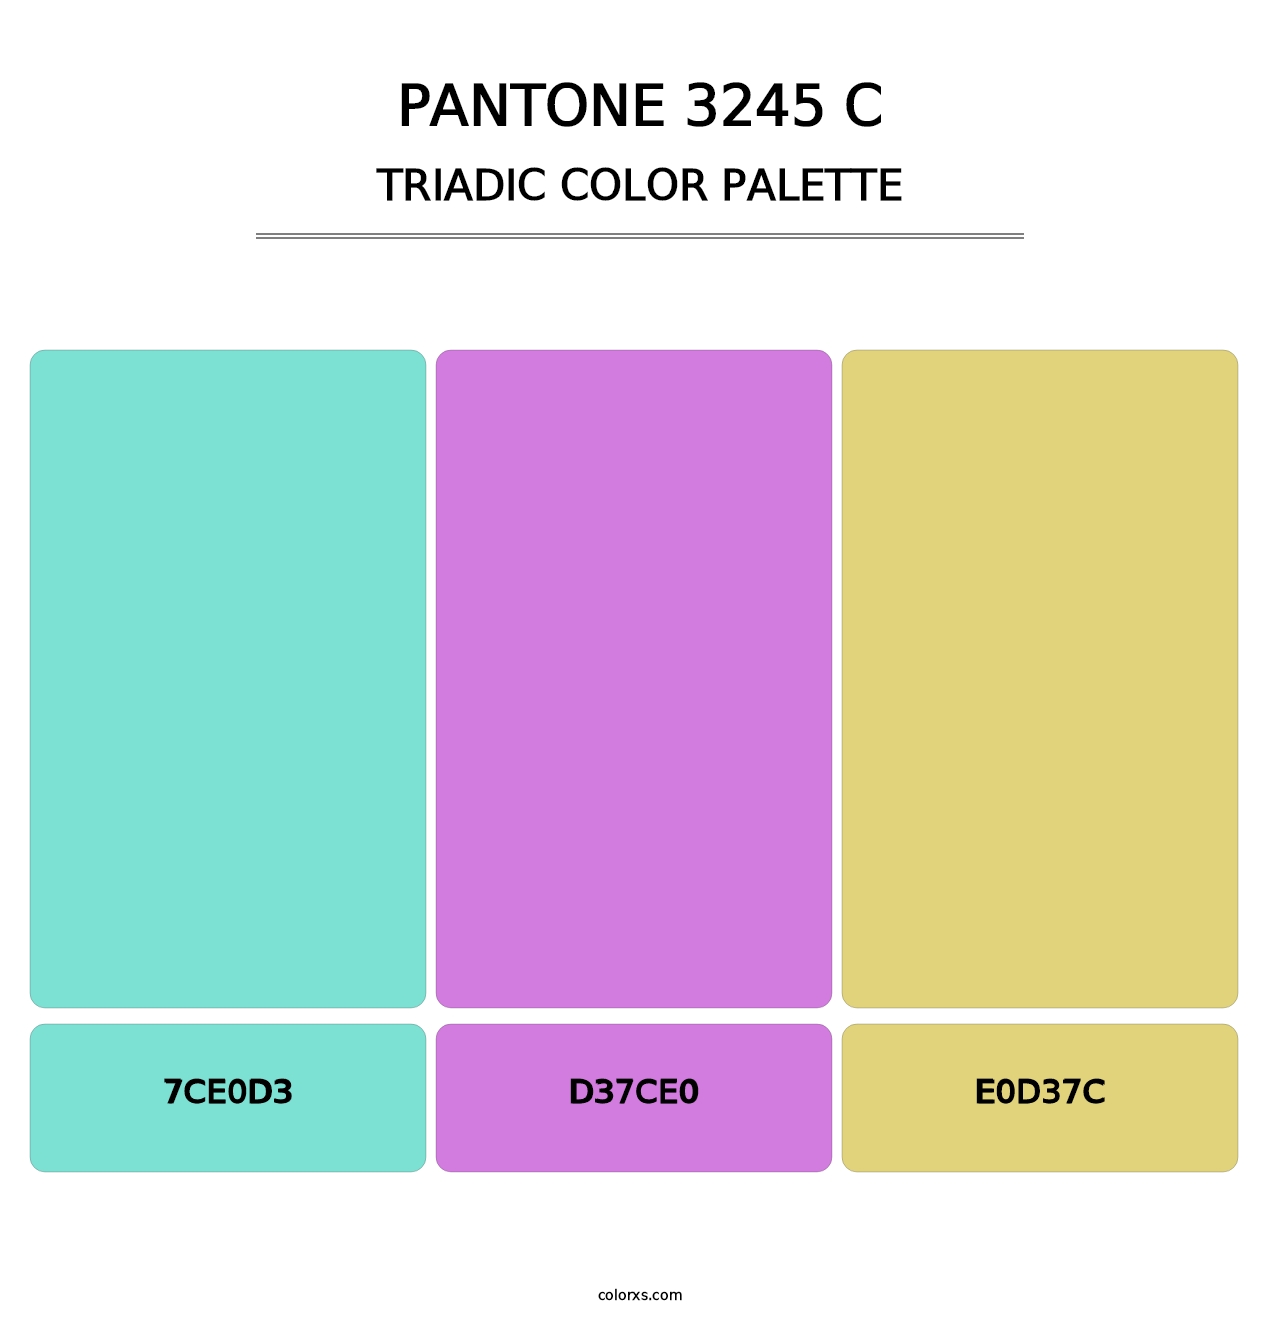 PANTONE 3245 C - Triadic Color Palette